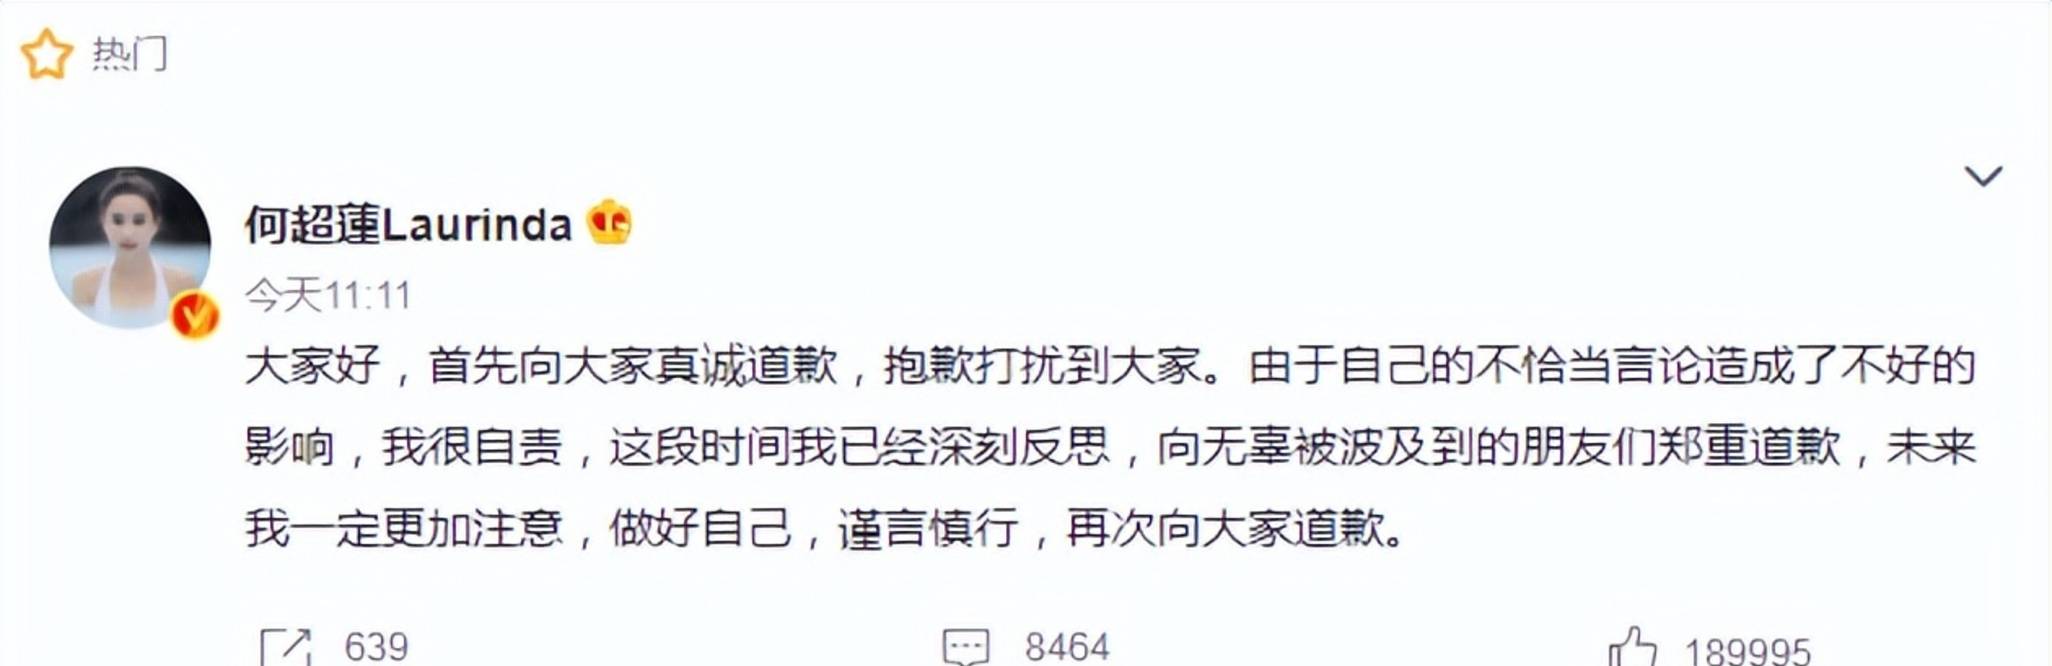 何超莲在社交平台上发布道歉，对最近的争议表示最诚挚的歉意